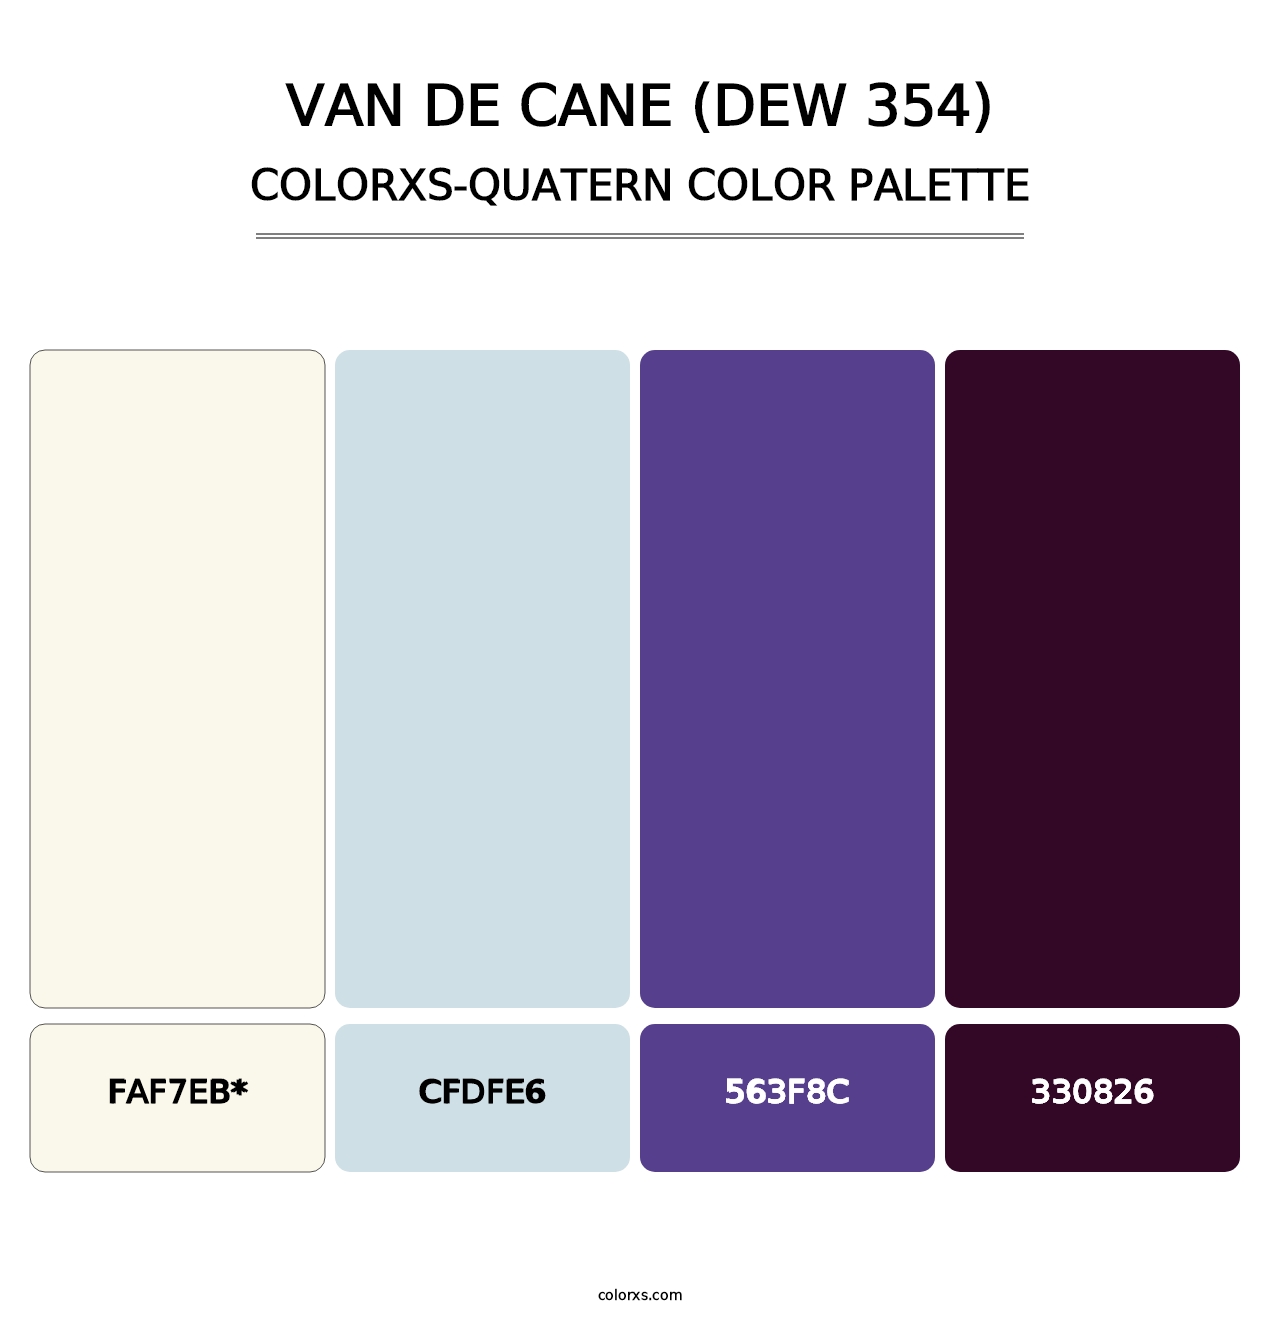 Van de Cane (DEW 354) - Colorxs Quatern Palette